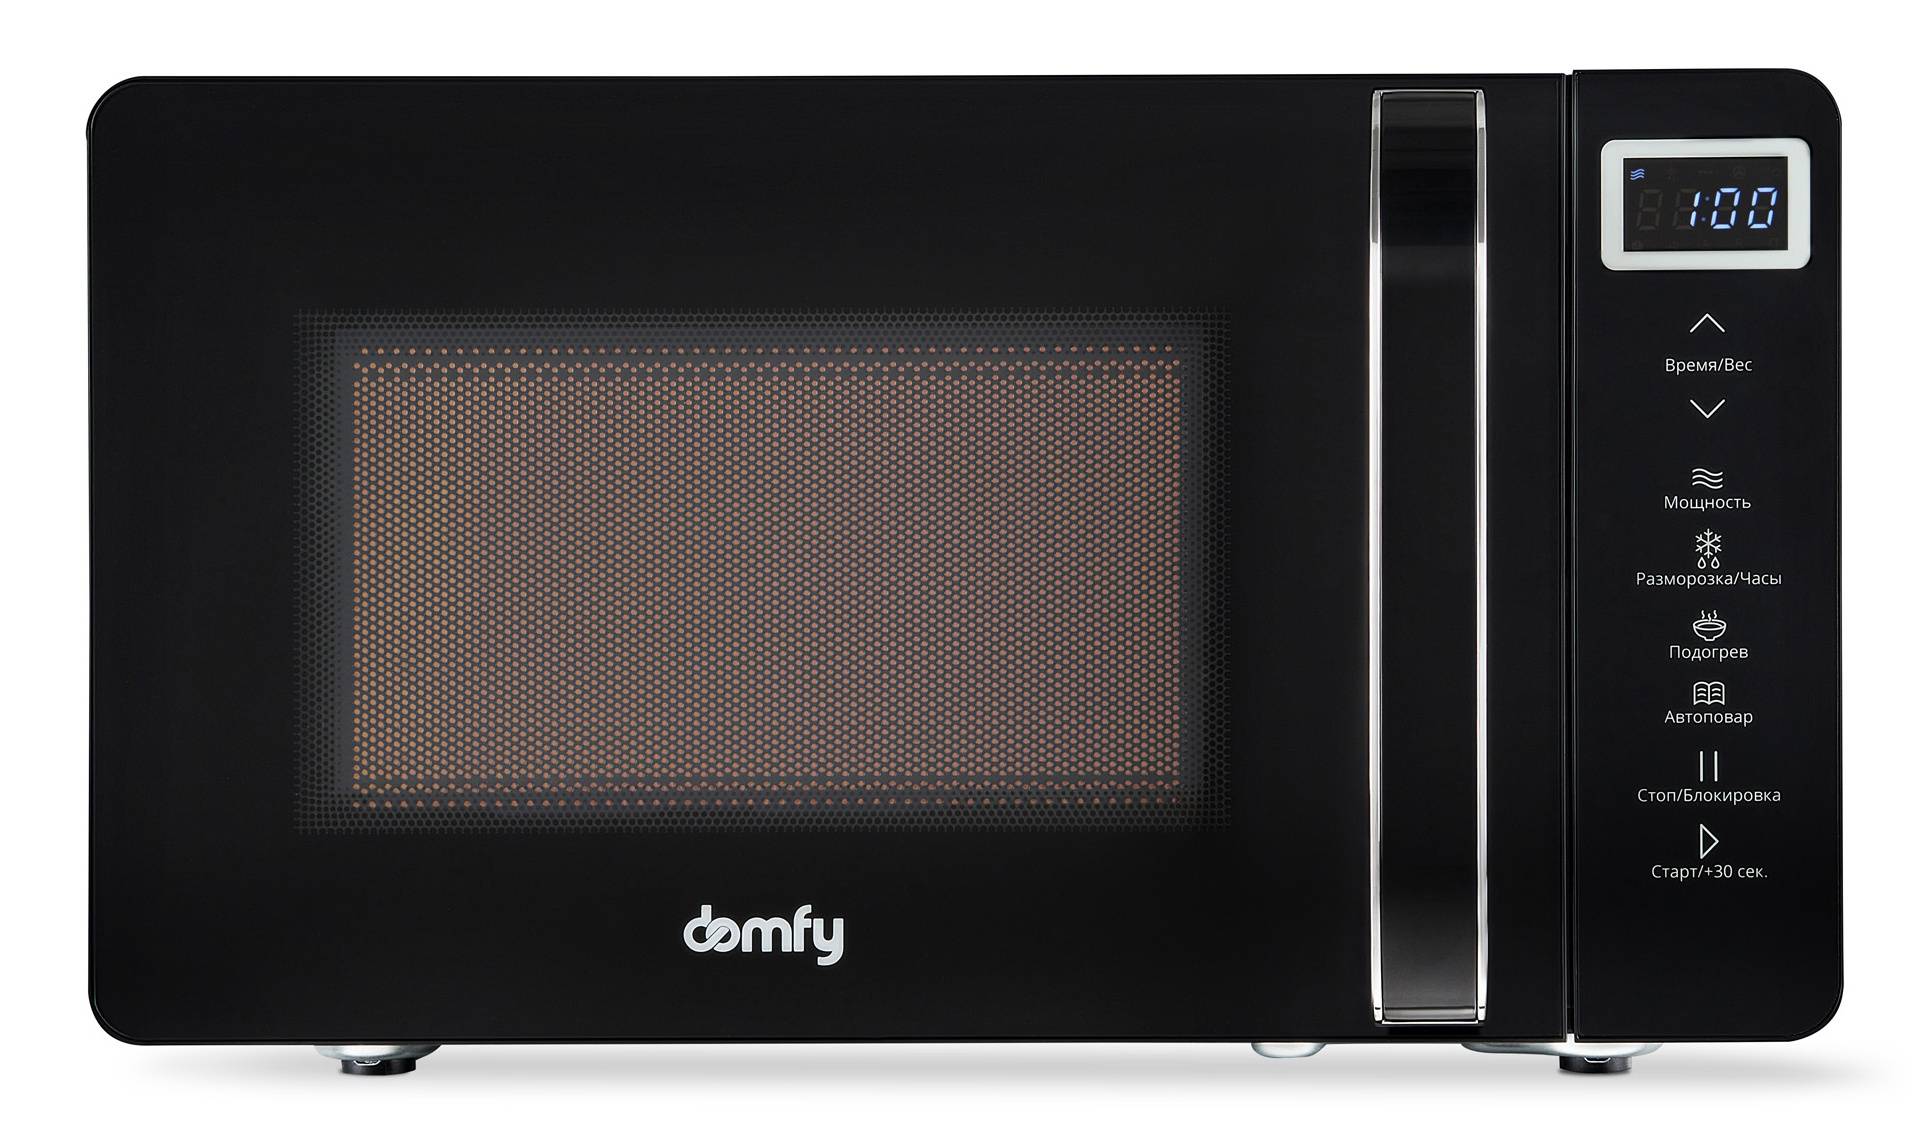 Микроволновая печь Domfy DSB-MW103, черный